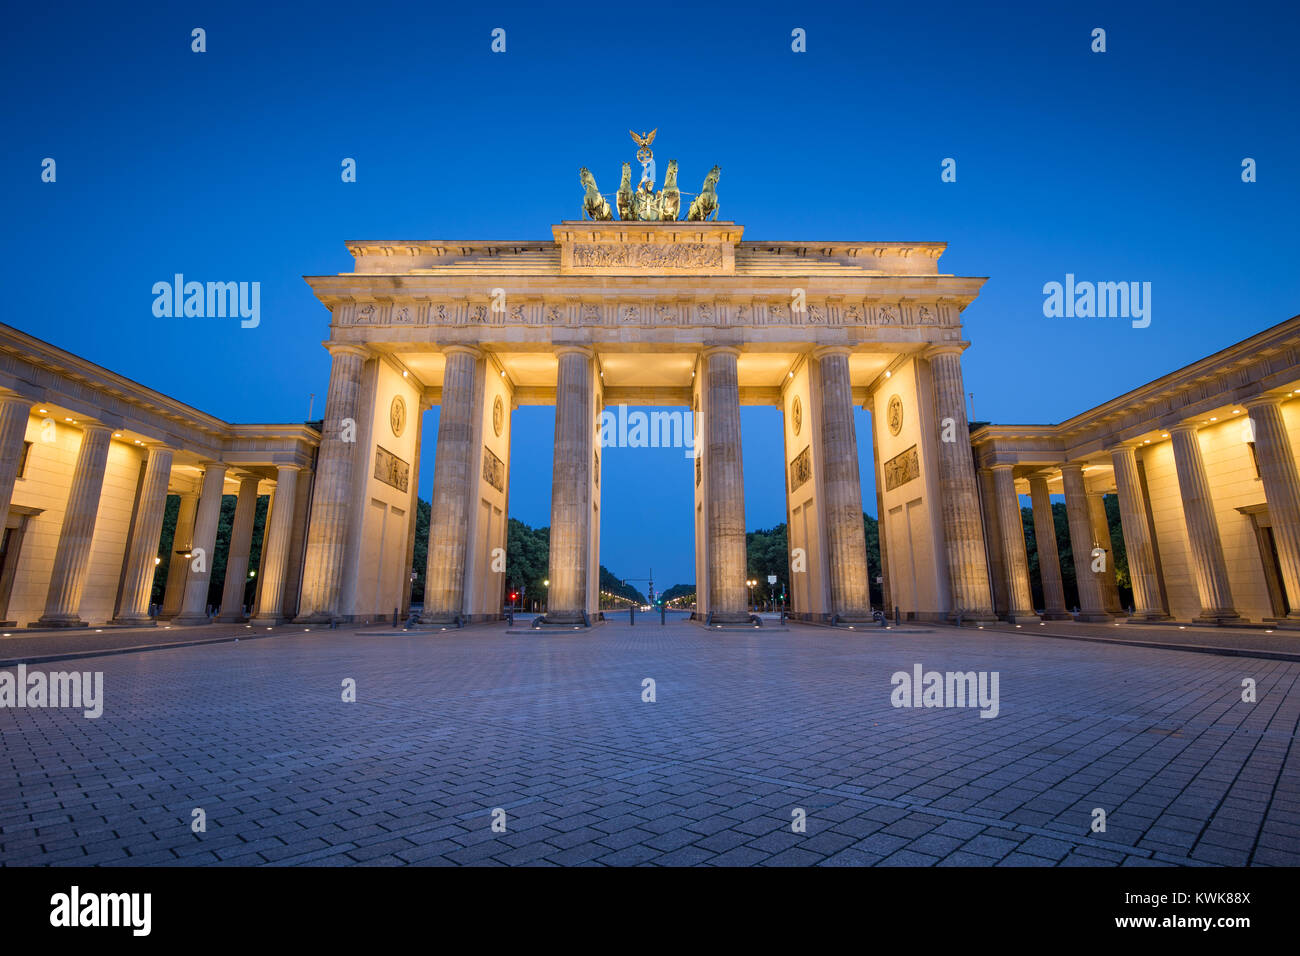 Visualizzazione classica del famoso Brandenburger Tor (Porta di Brandeburgo), uno dei più noti monumenti e simboli nazionali della Germania, in penombra durante il blu Foto Stock